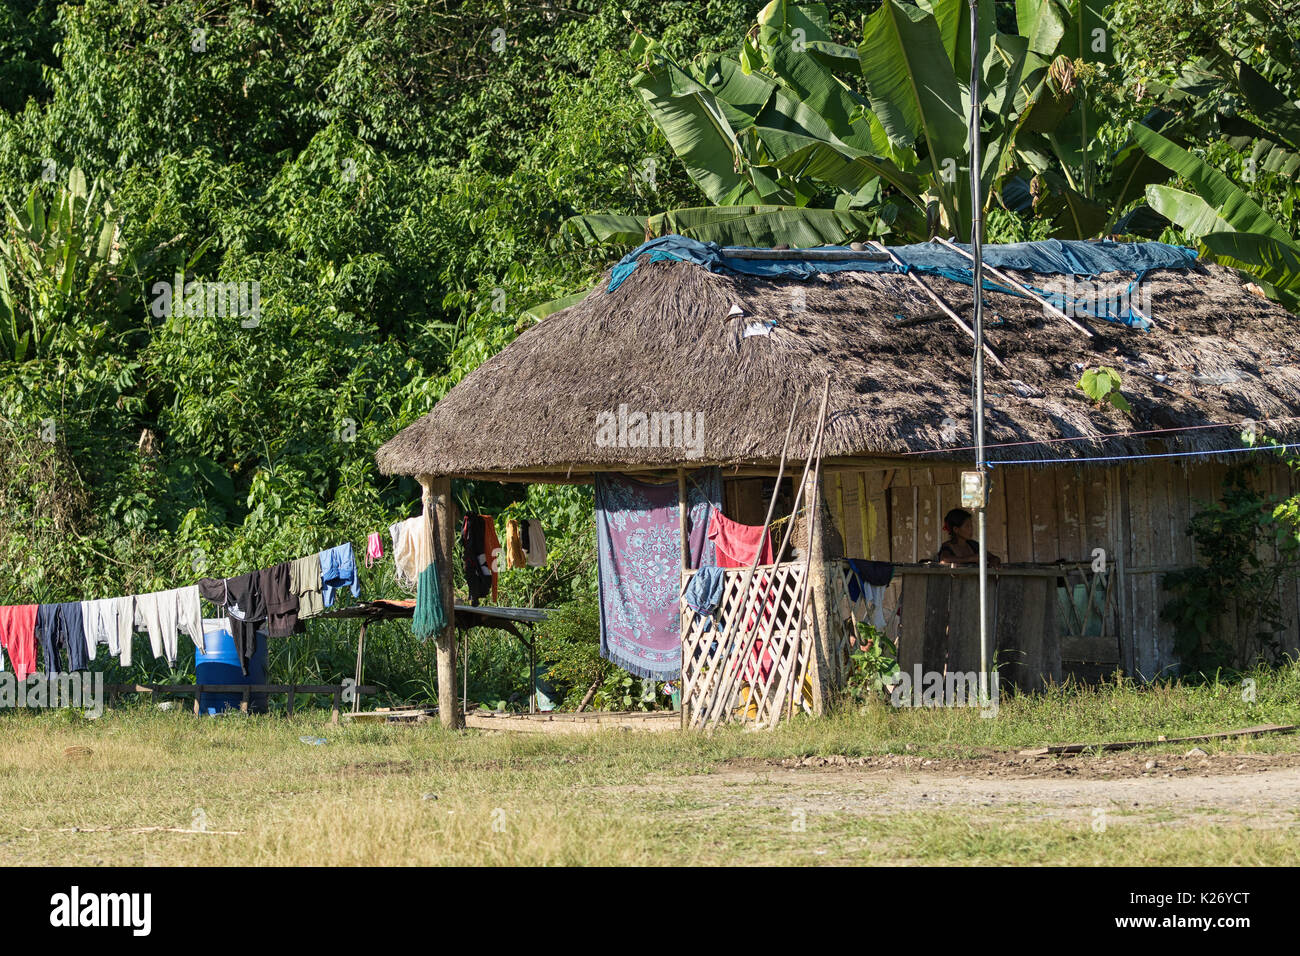 June 6, 2017 Misahualli, Ecuador: small habitation shacks made of wood planks in the Amazon area Stock Photo